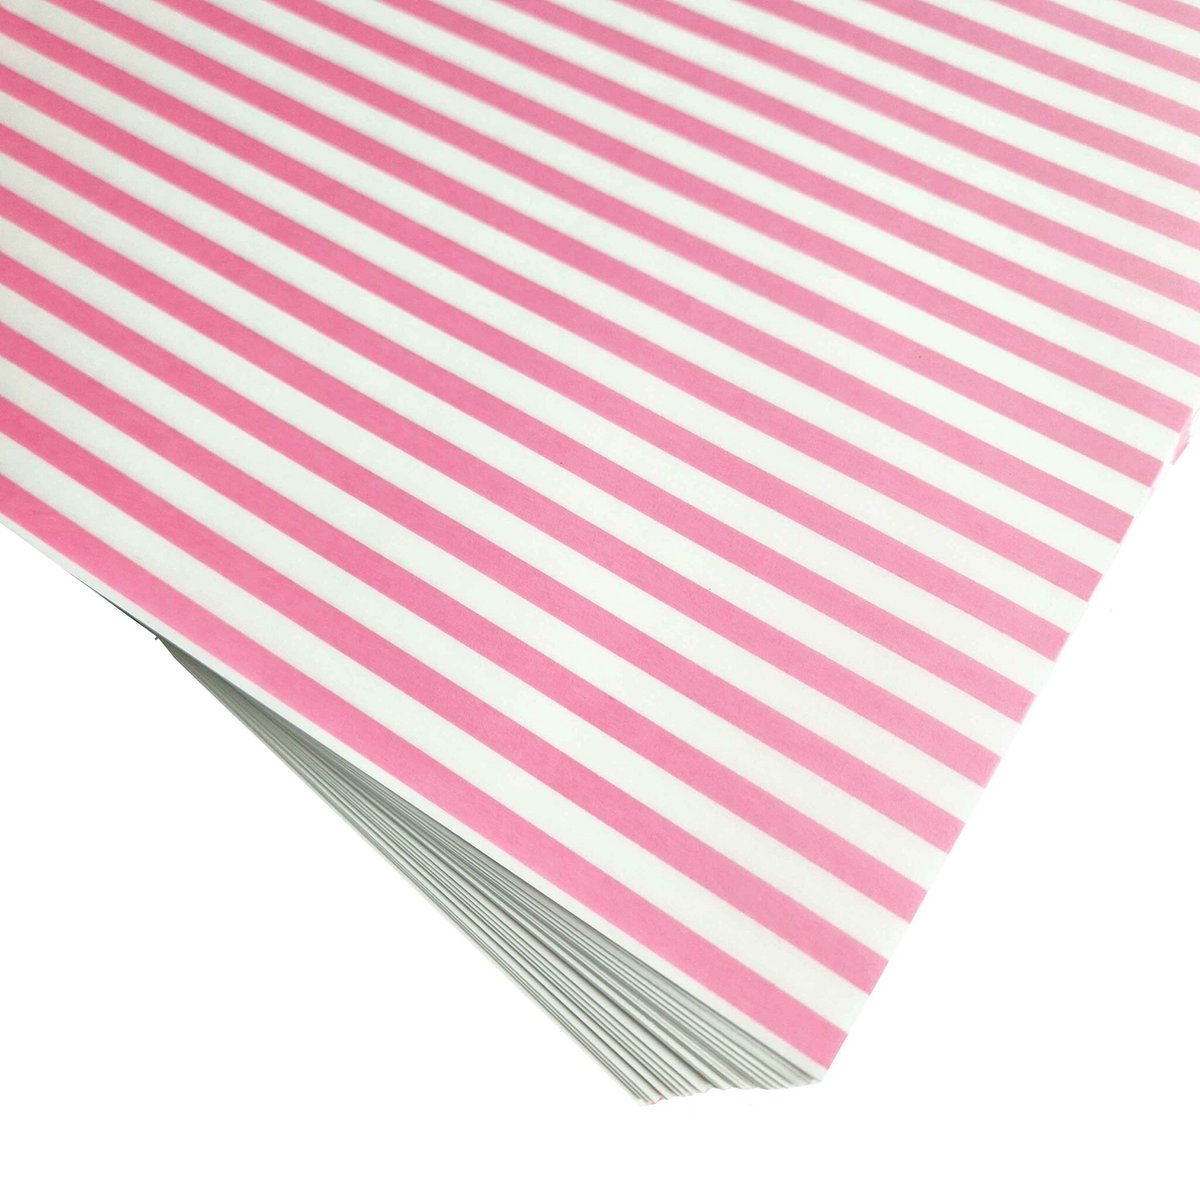 Groot formaat vetvrij papier - zuurstokroze strepen - 24 x 24 cm (100 stuks)